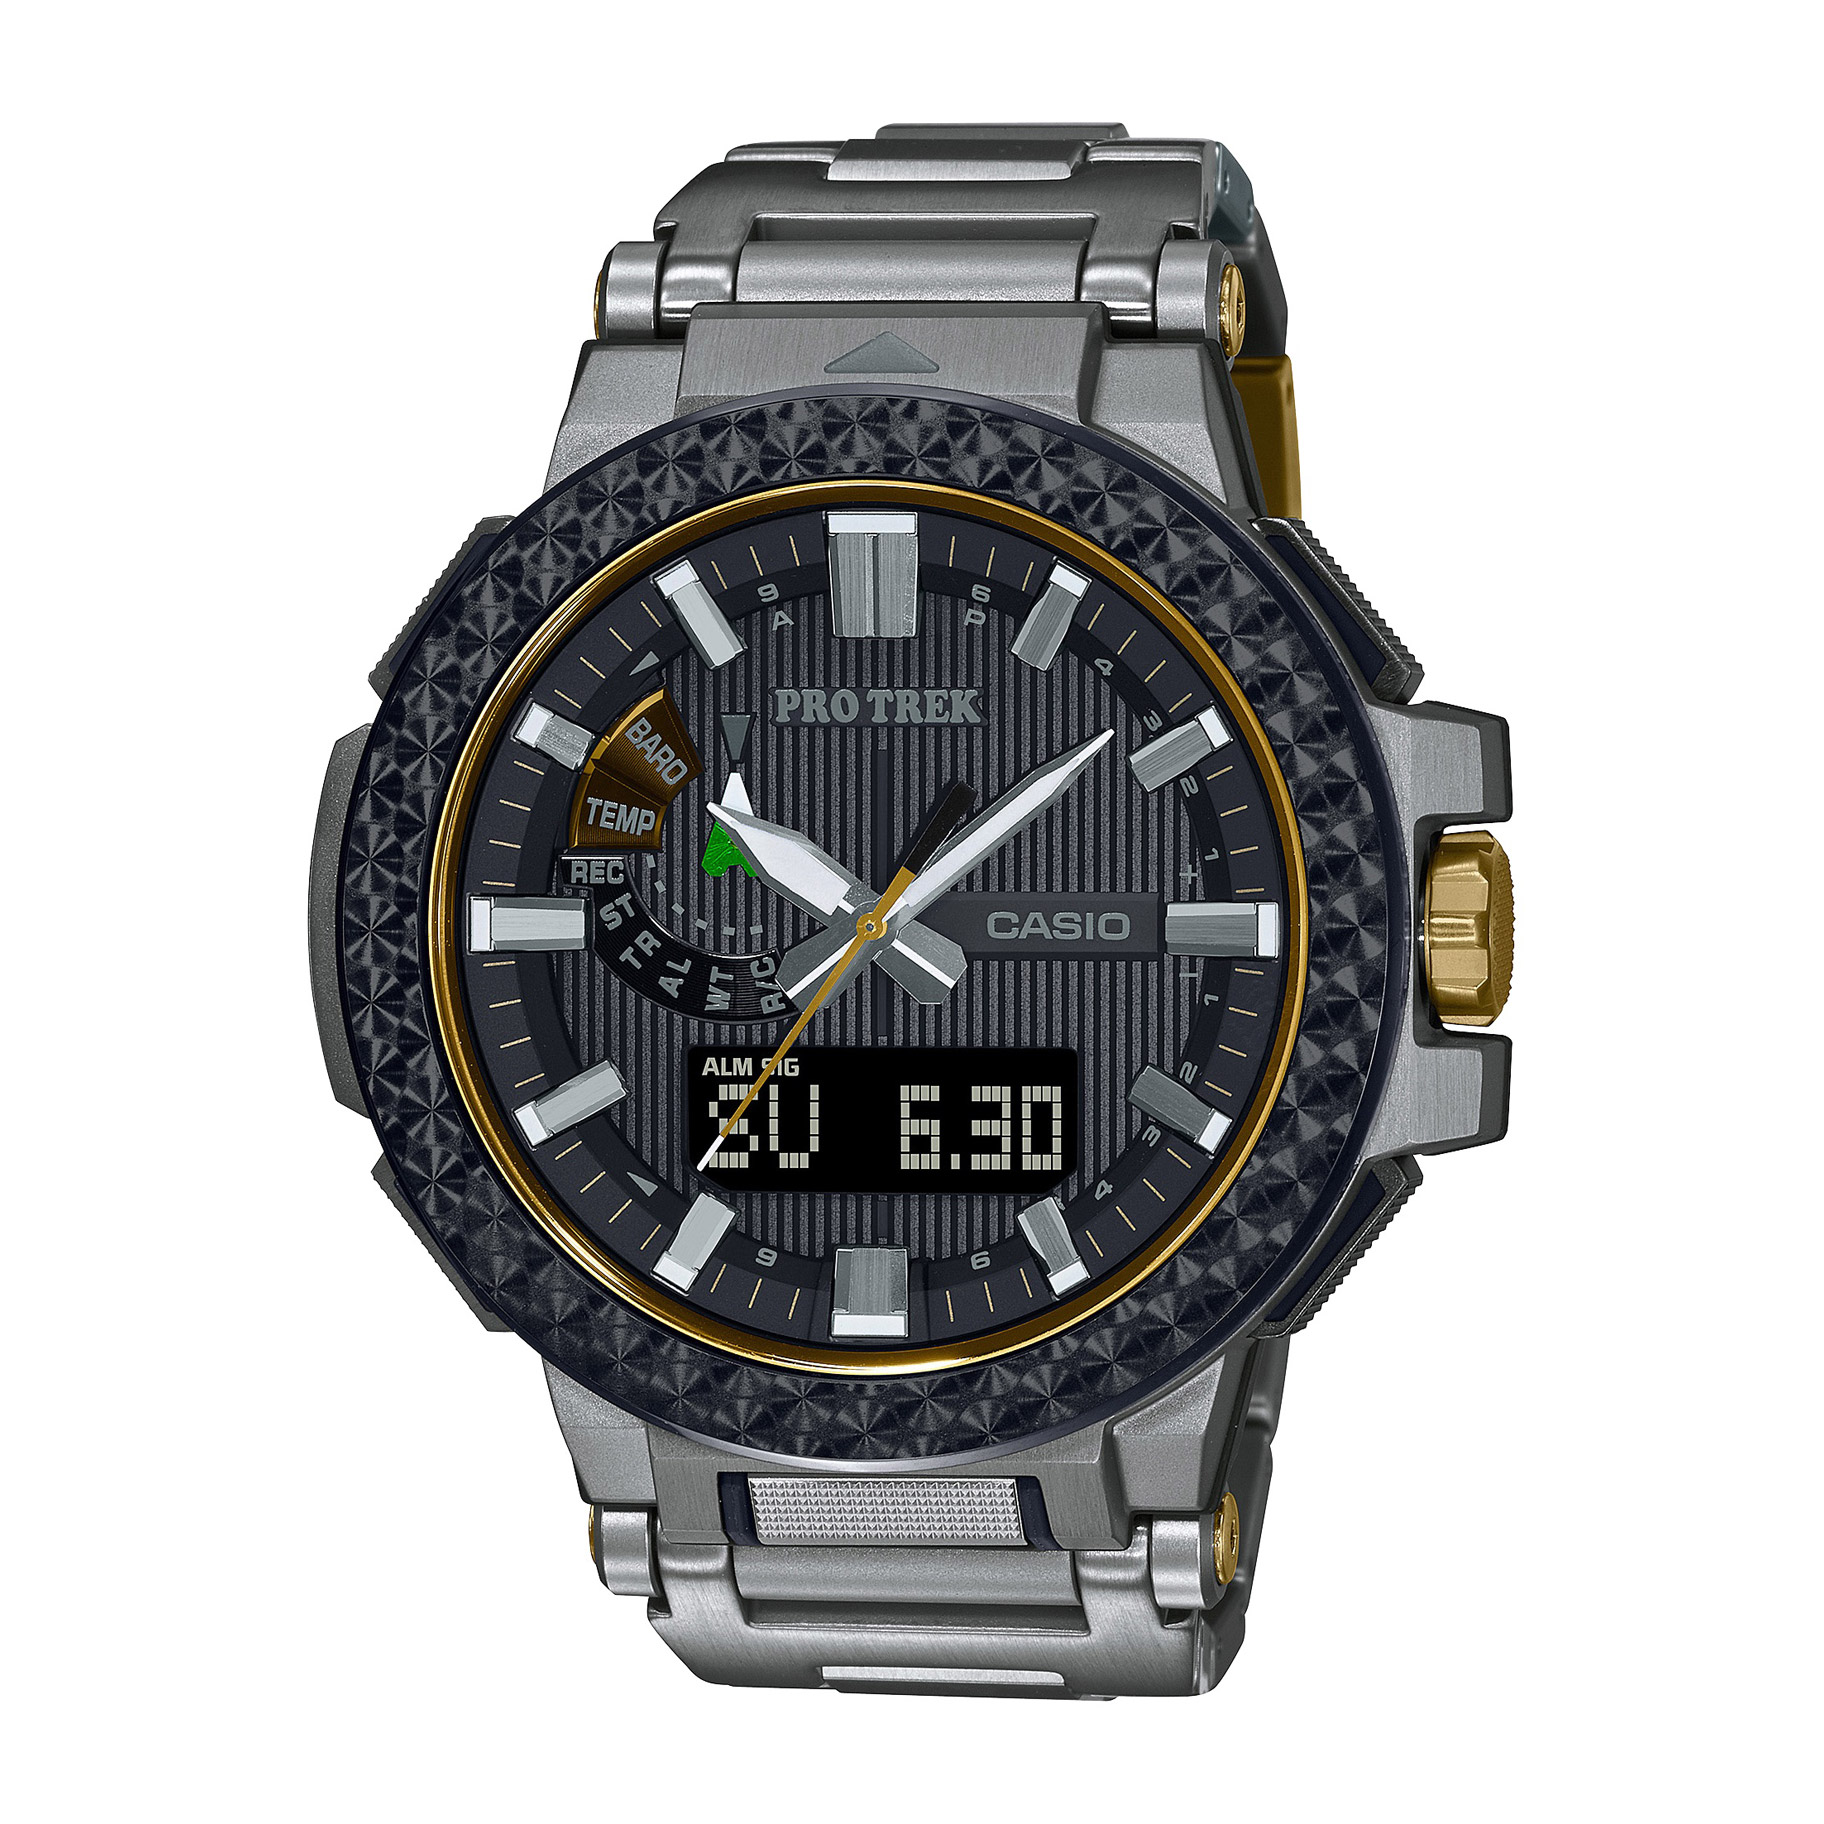 ソーラー電波時計 Protrek プロトレック Manaslu マナスル Special Model Prx 8025ht 1jr 国内ブランドメンズ腕時計の通販はソフマップ Sofmap